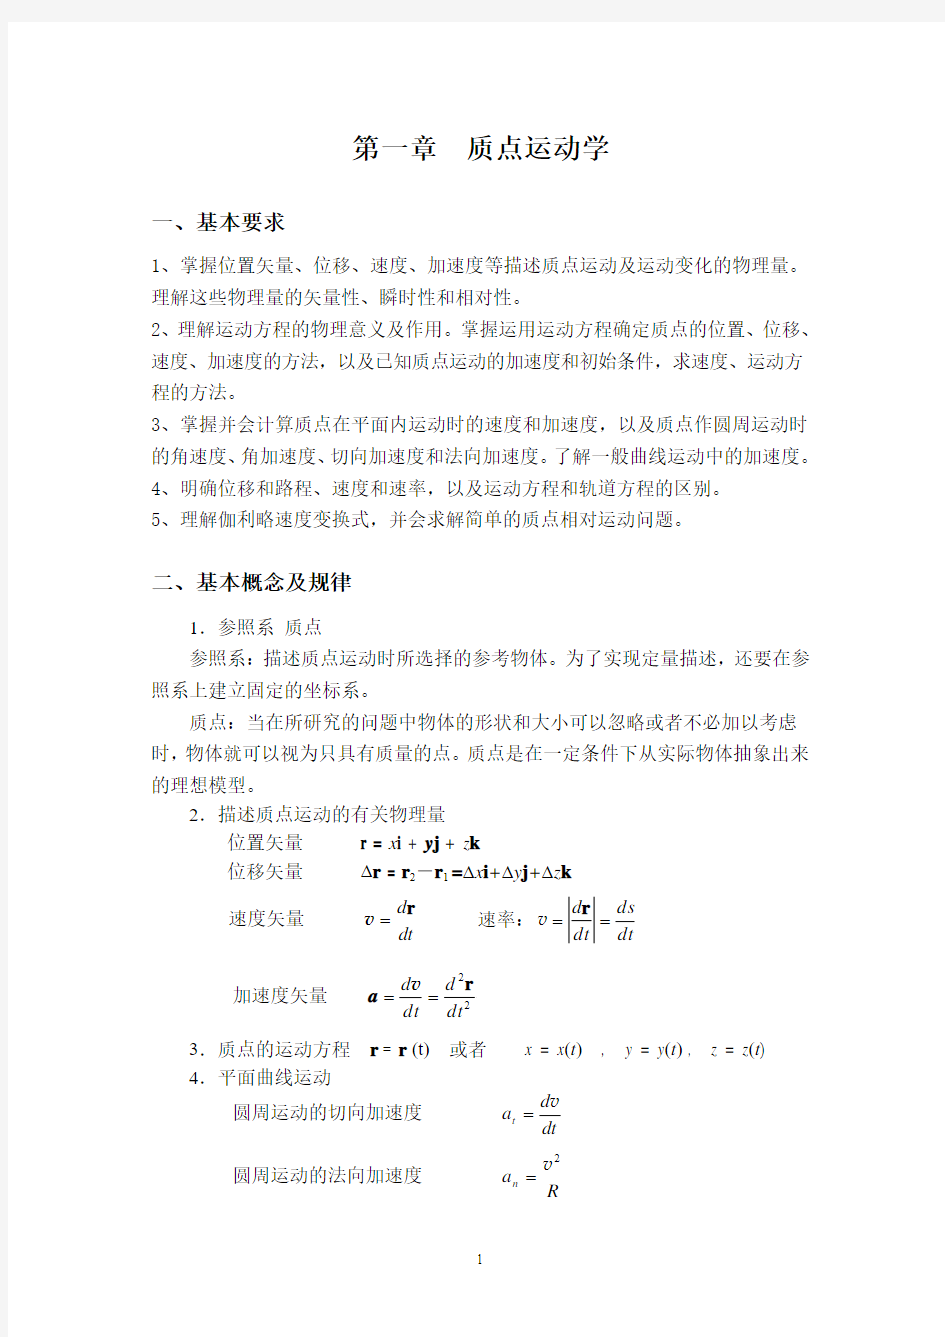 大学物理练习册(上)第三次修改稿